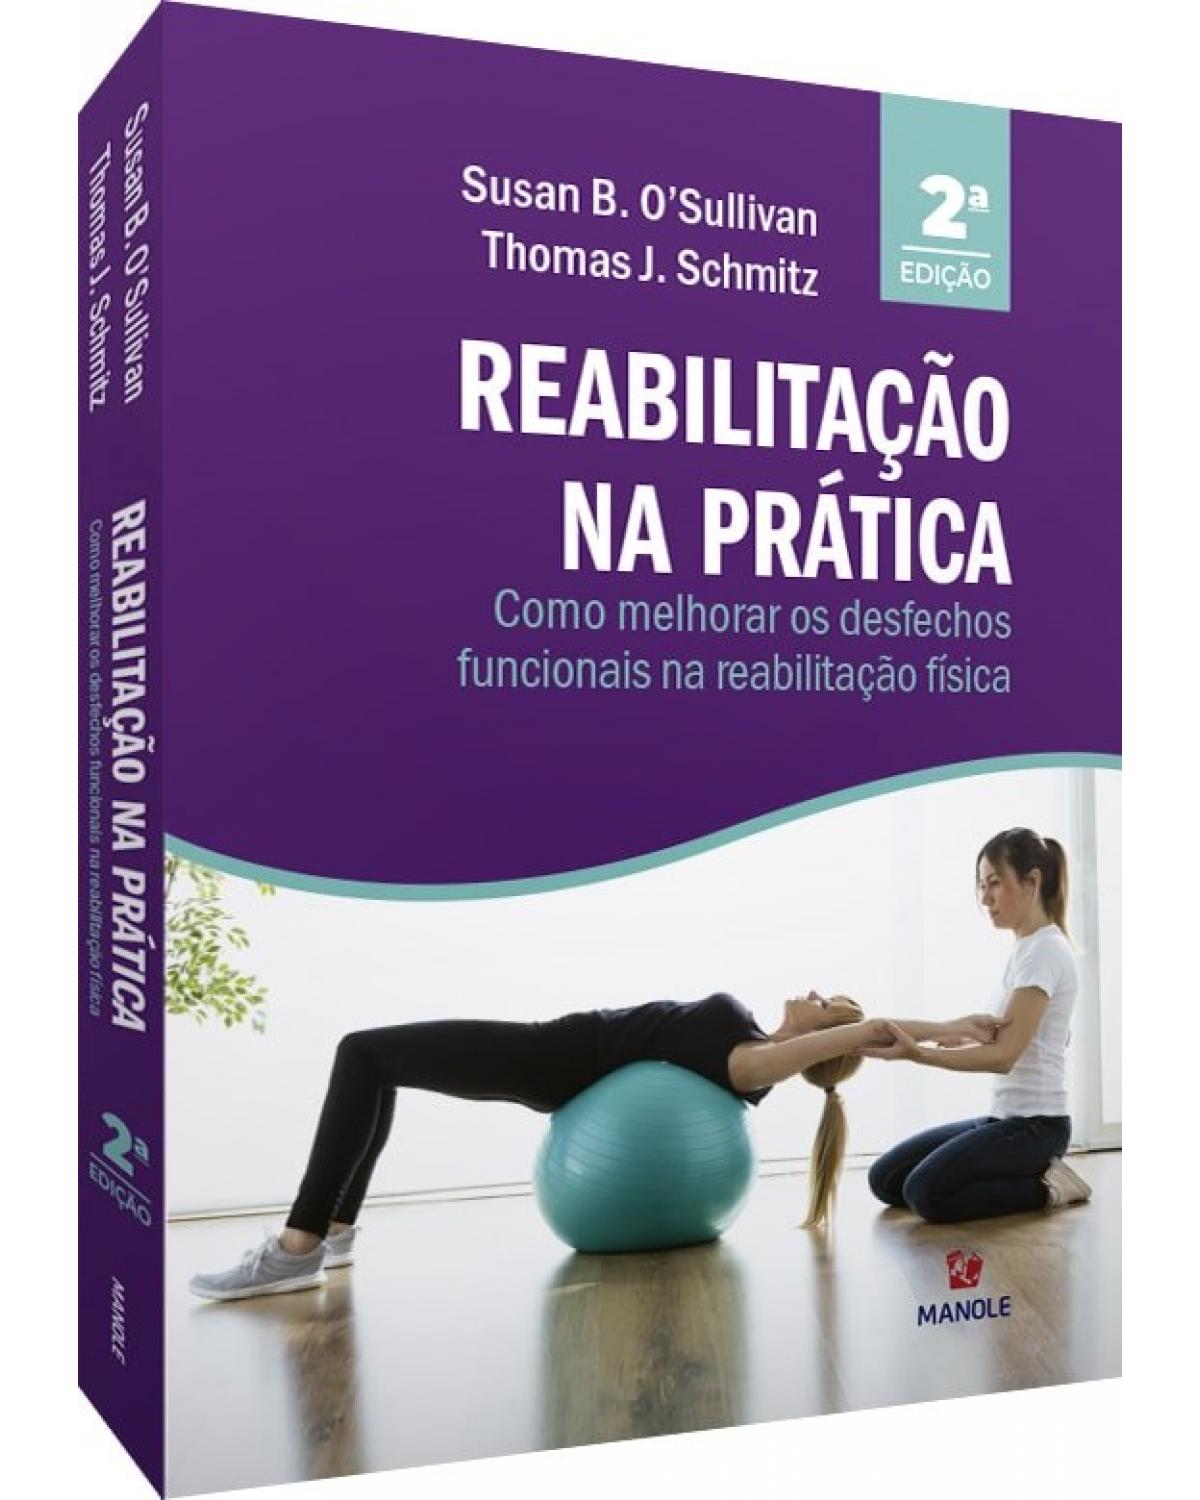 Reabilitação na prática - como melhorar os desfechos funcionais na reabilitação física - 2ª Edição | 2020